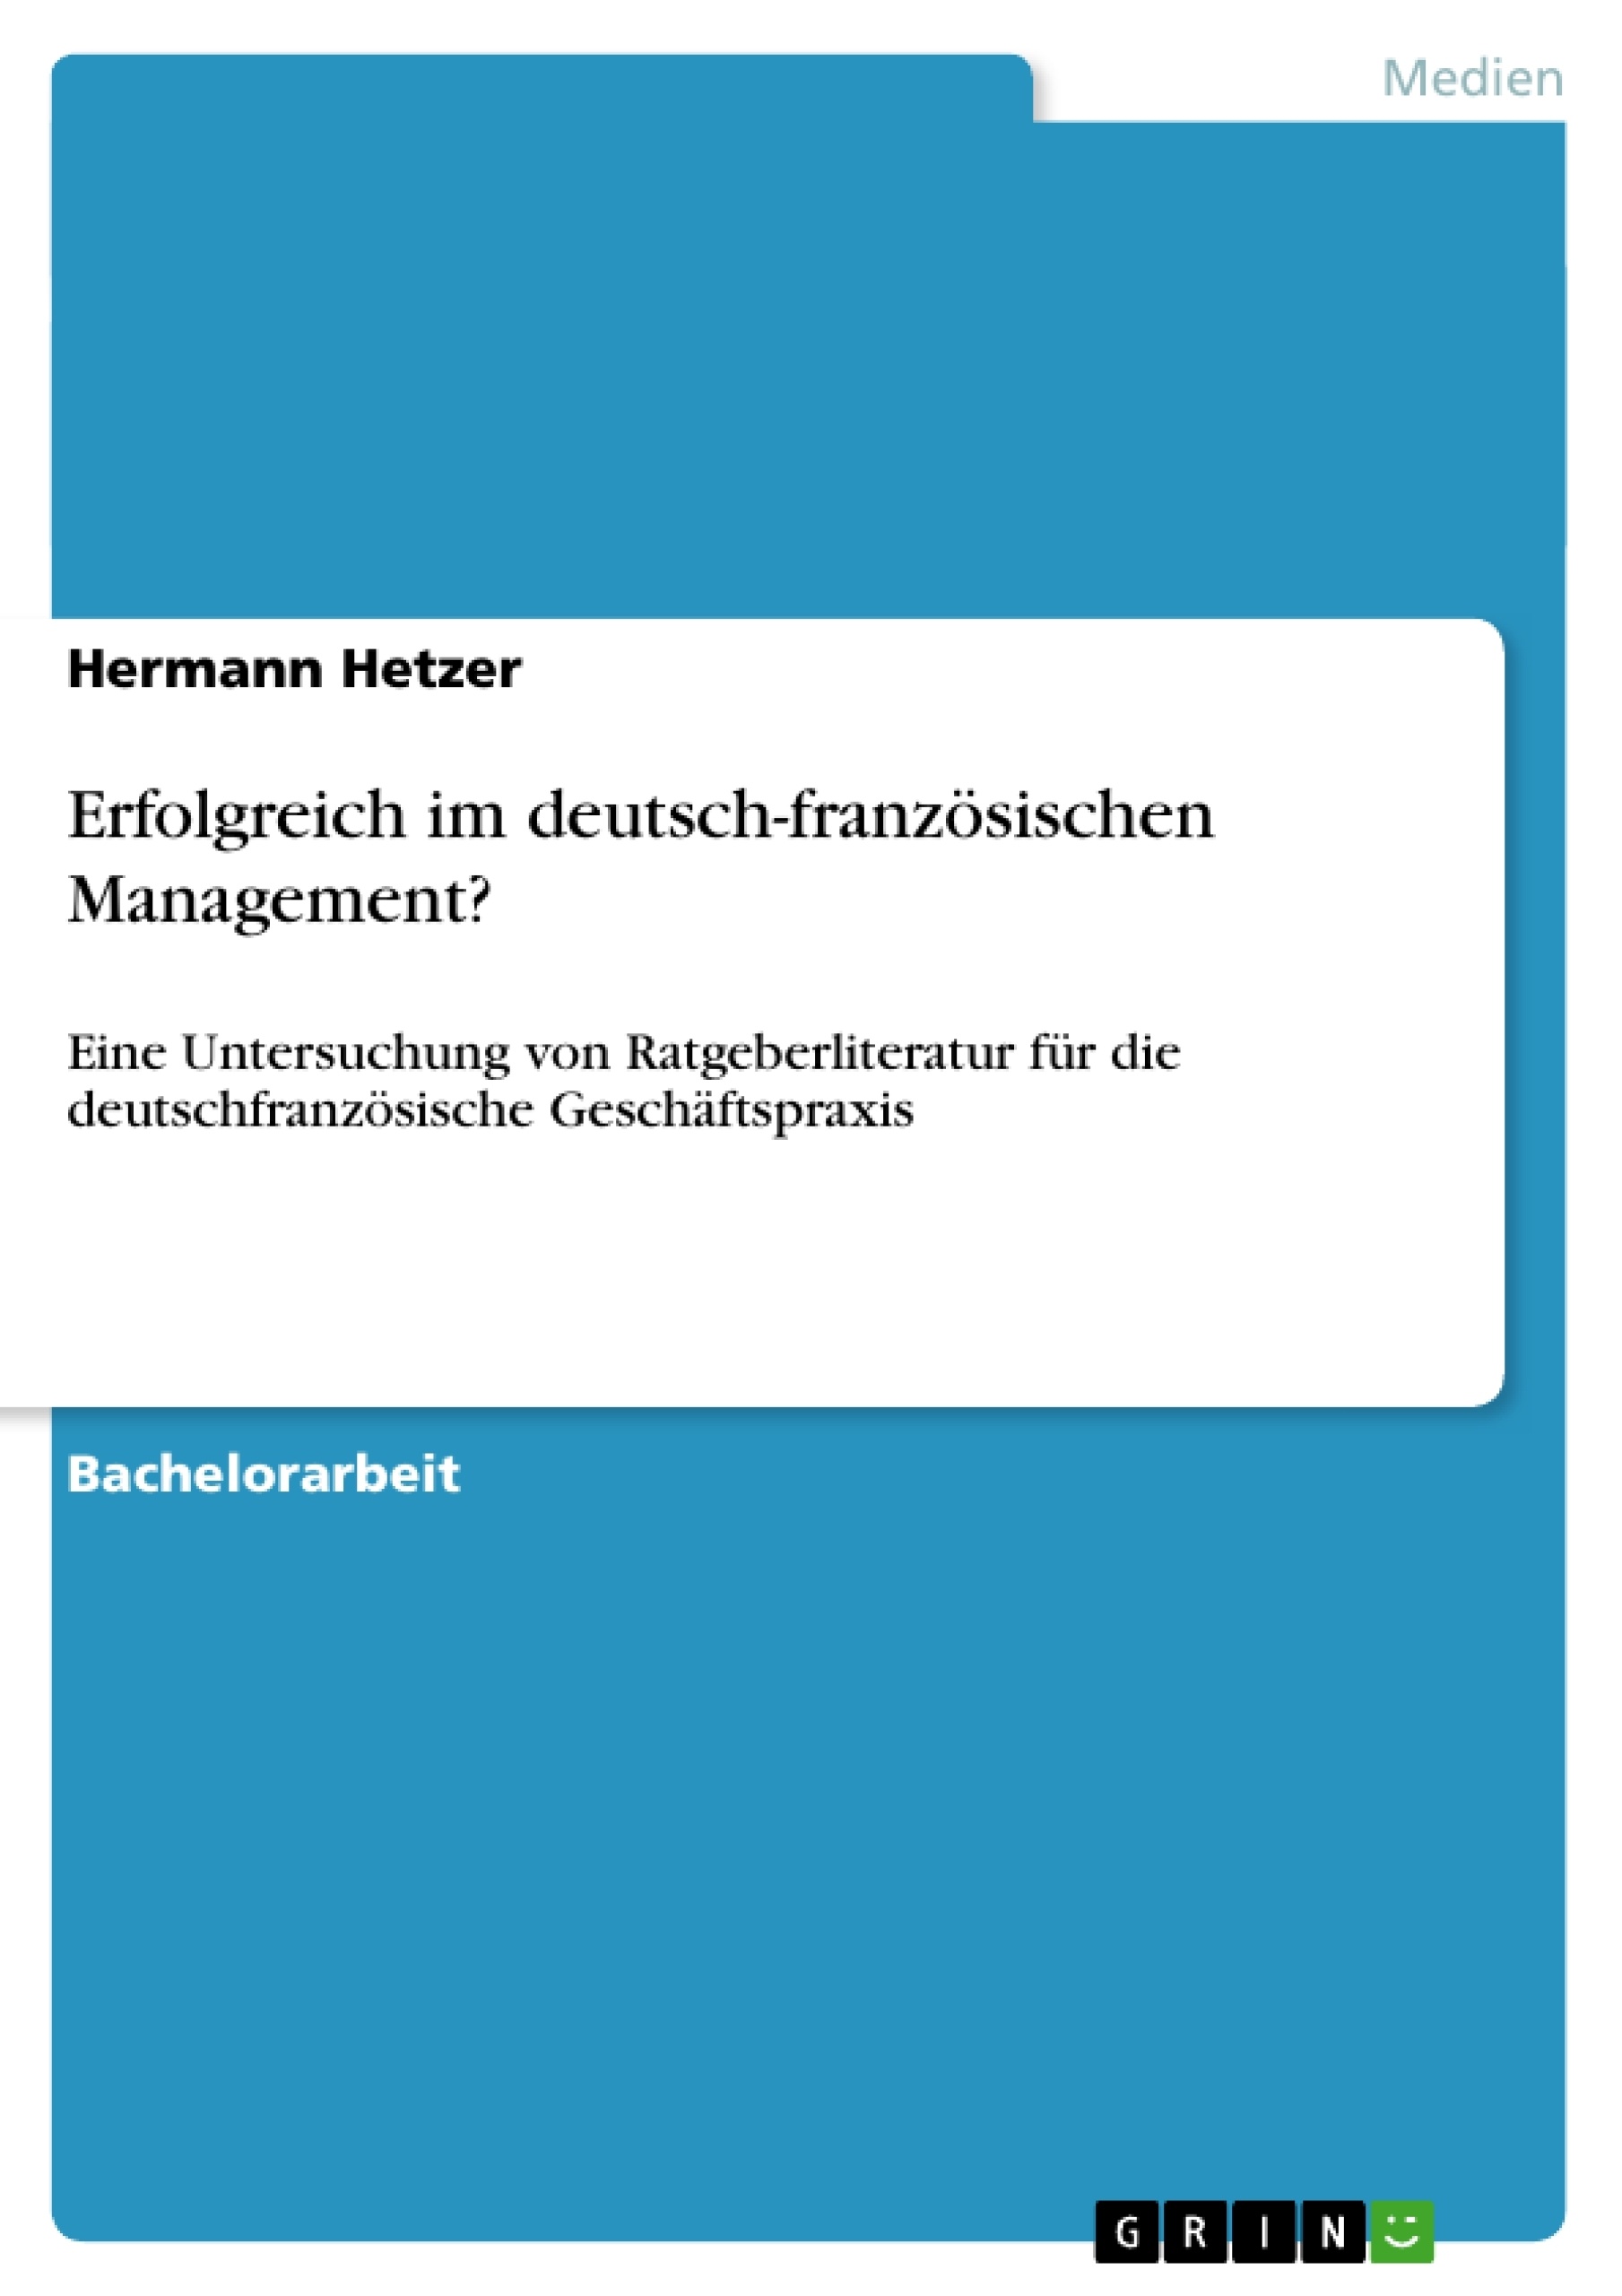 Title: Erfolgreich im deutsch-französischen Management?